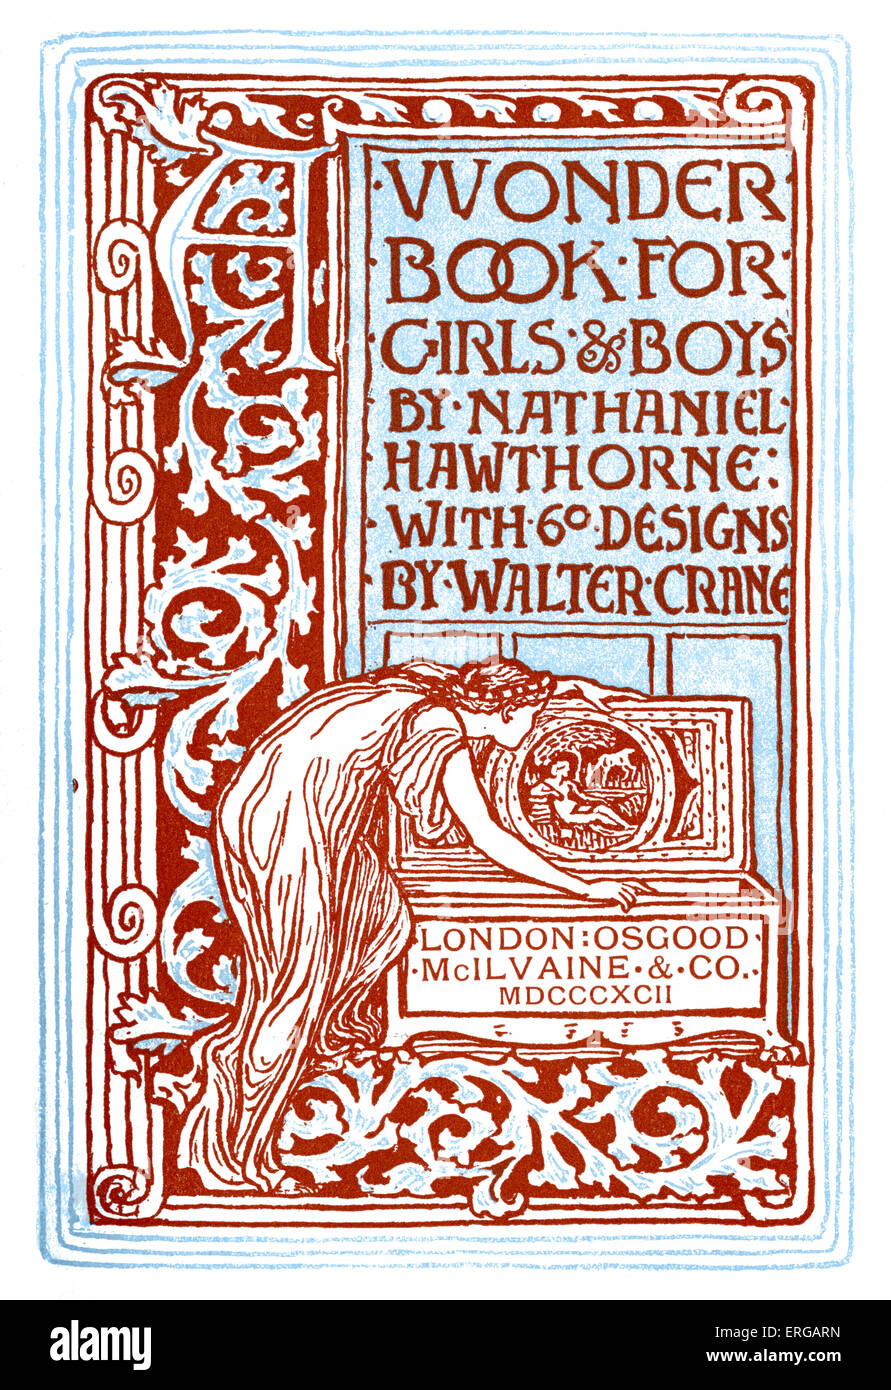 Buchcover für "Wonder Book für Mädchen und jungen" von Nathaniel Hawthorne. London 1892. Nacherzählung der griechischen Mythen. Illustrationen Stockfoto